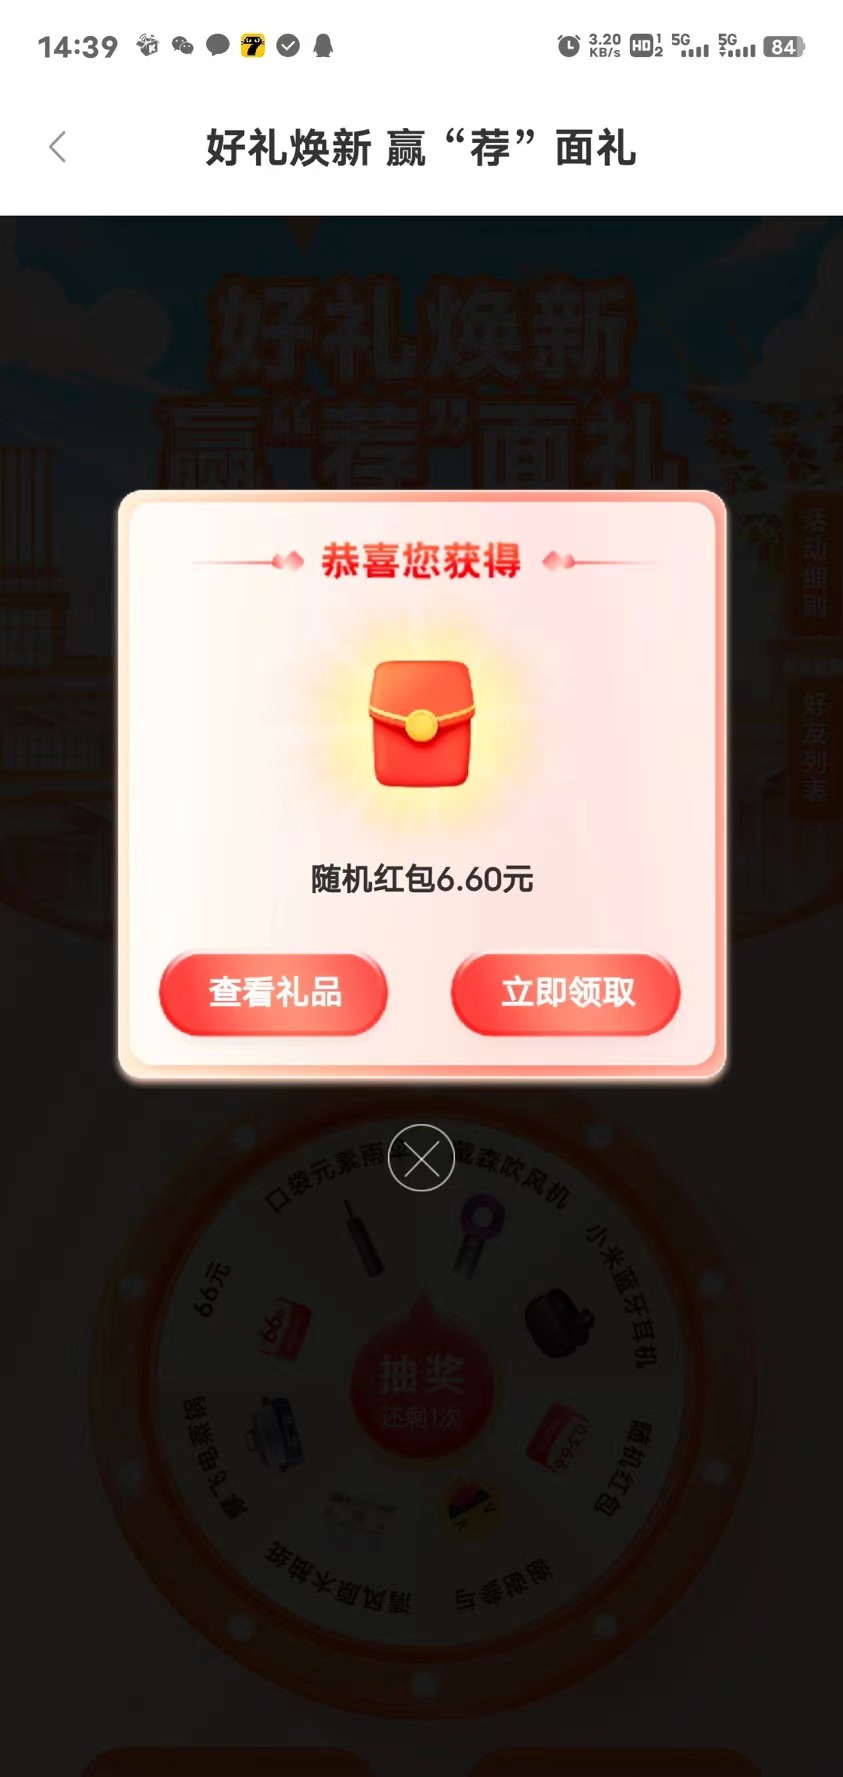 苏州银行app下载抽奖